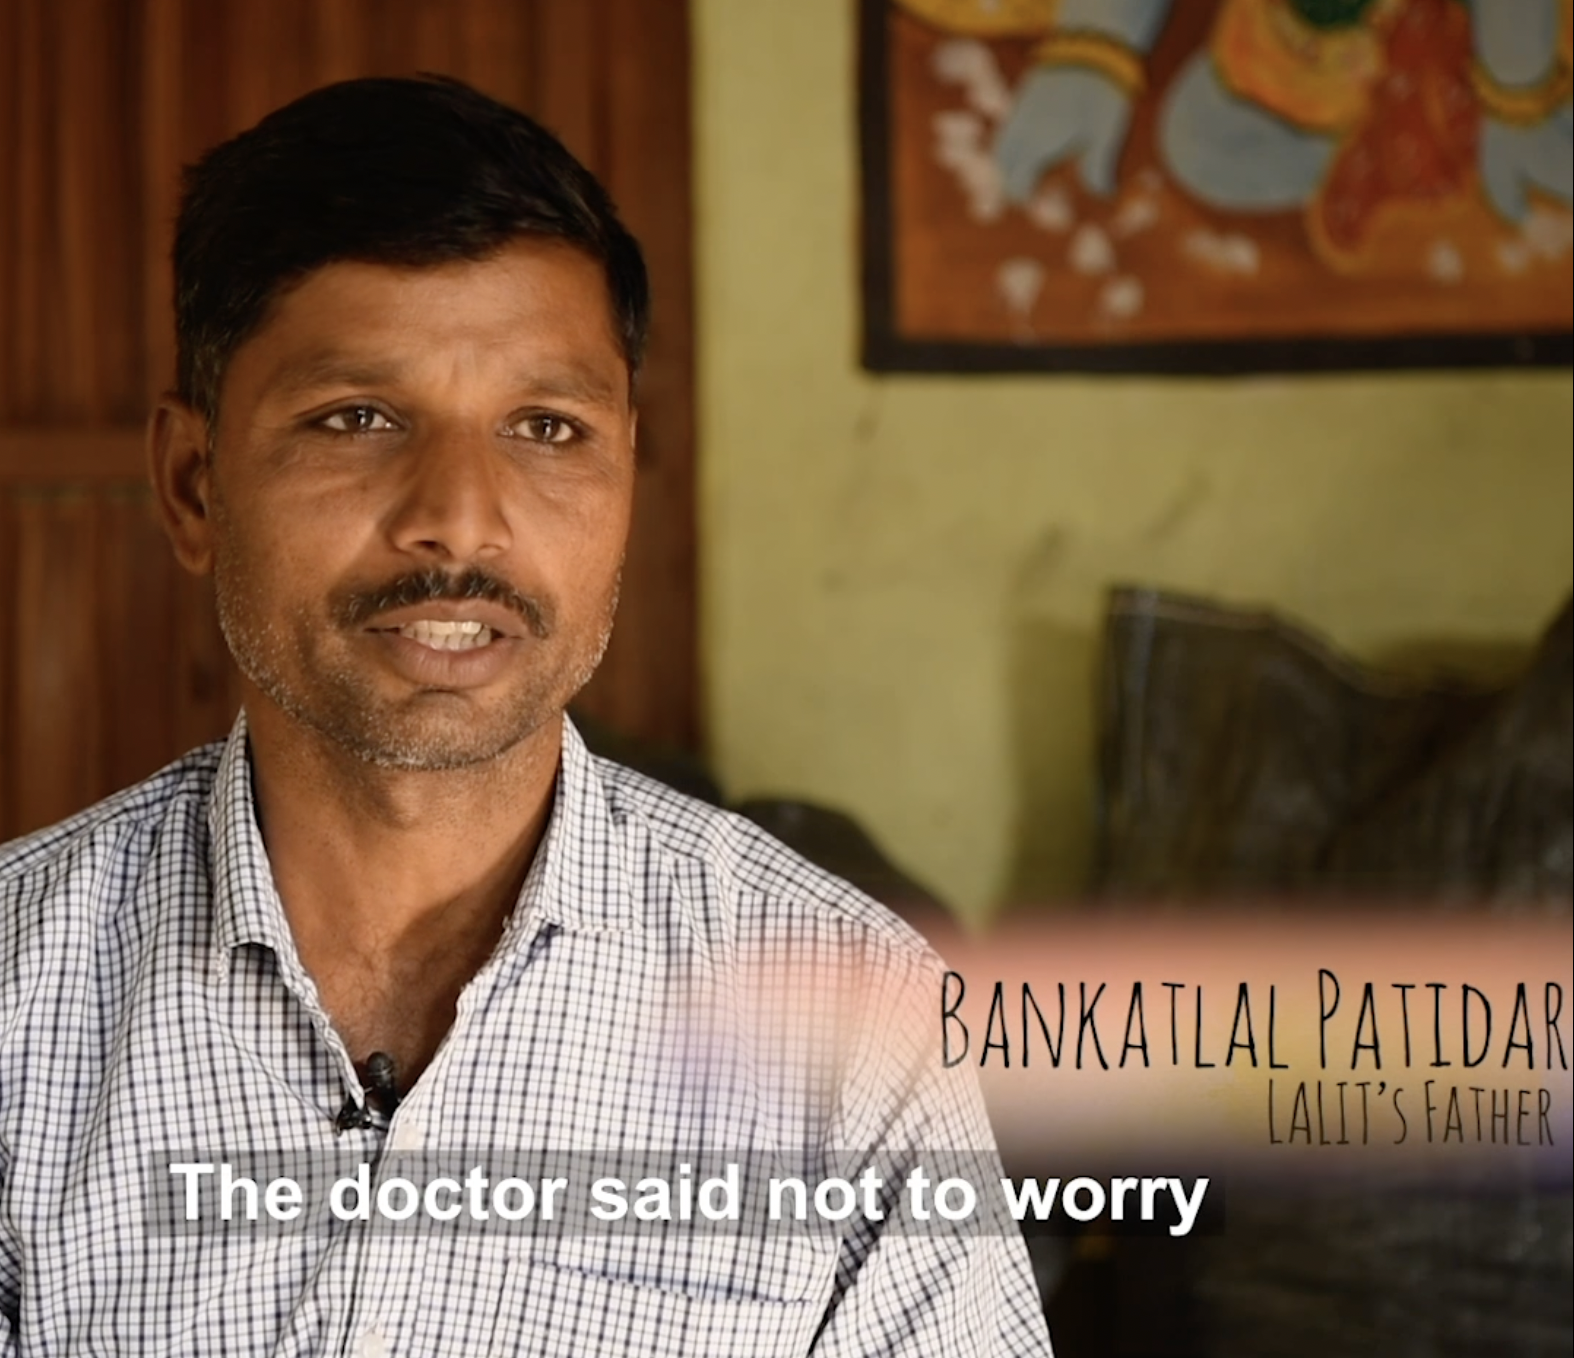 Bankatlala Patidar hablando sobre el estado de su hijo Lalit Patidar en un vídeo de Facebook de Born Different el 9 de mayo de 2020 | Foto: Facebook/Born Different